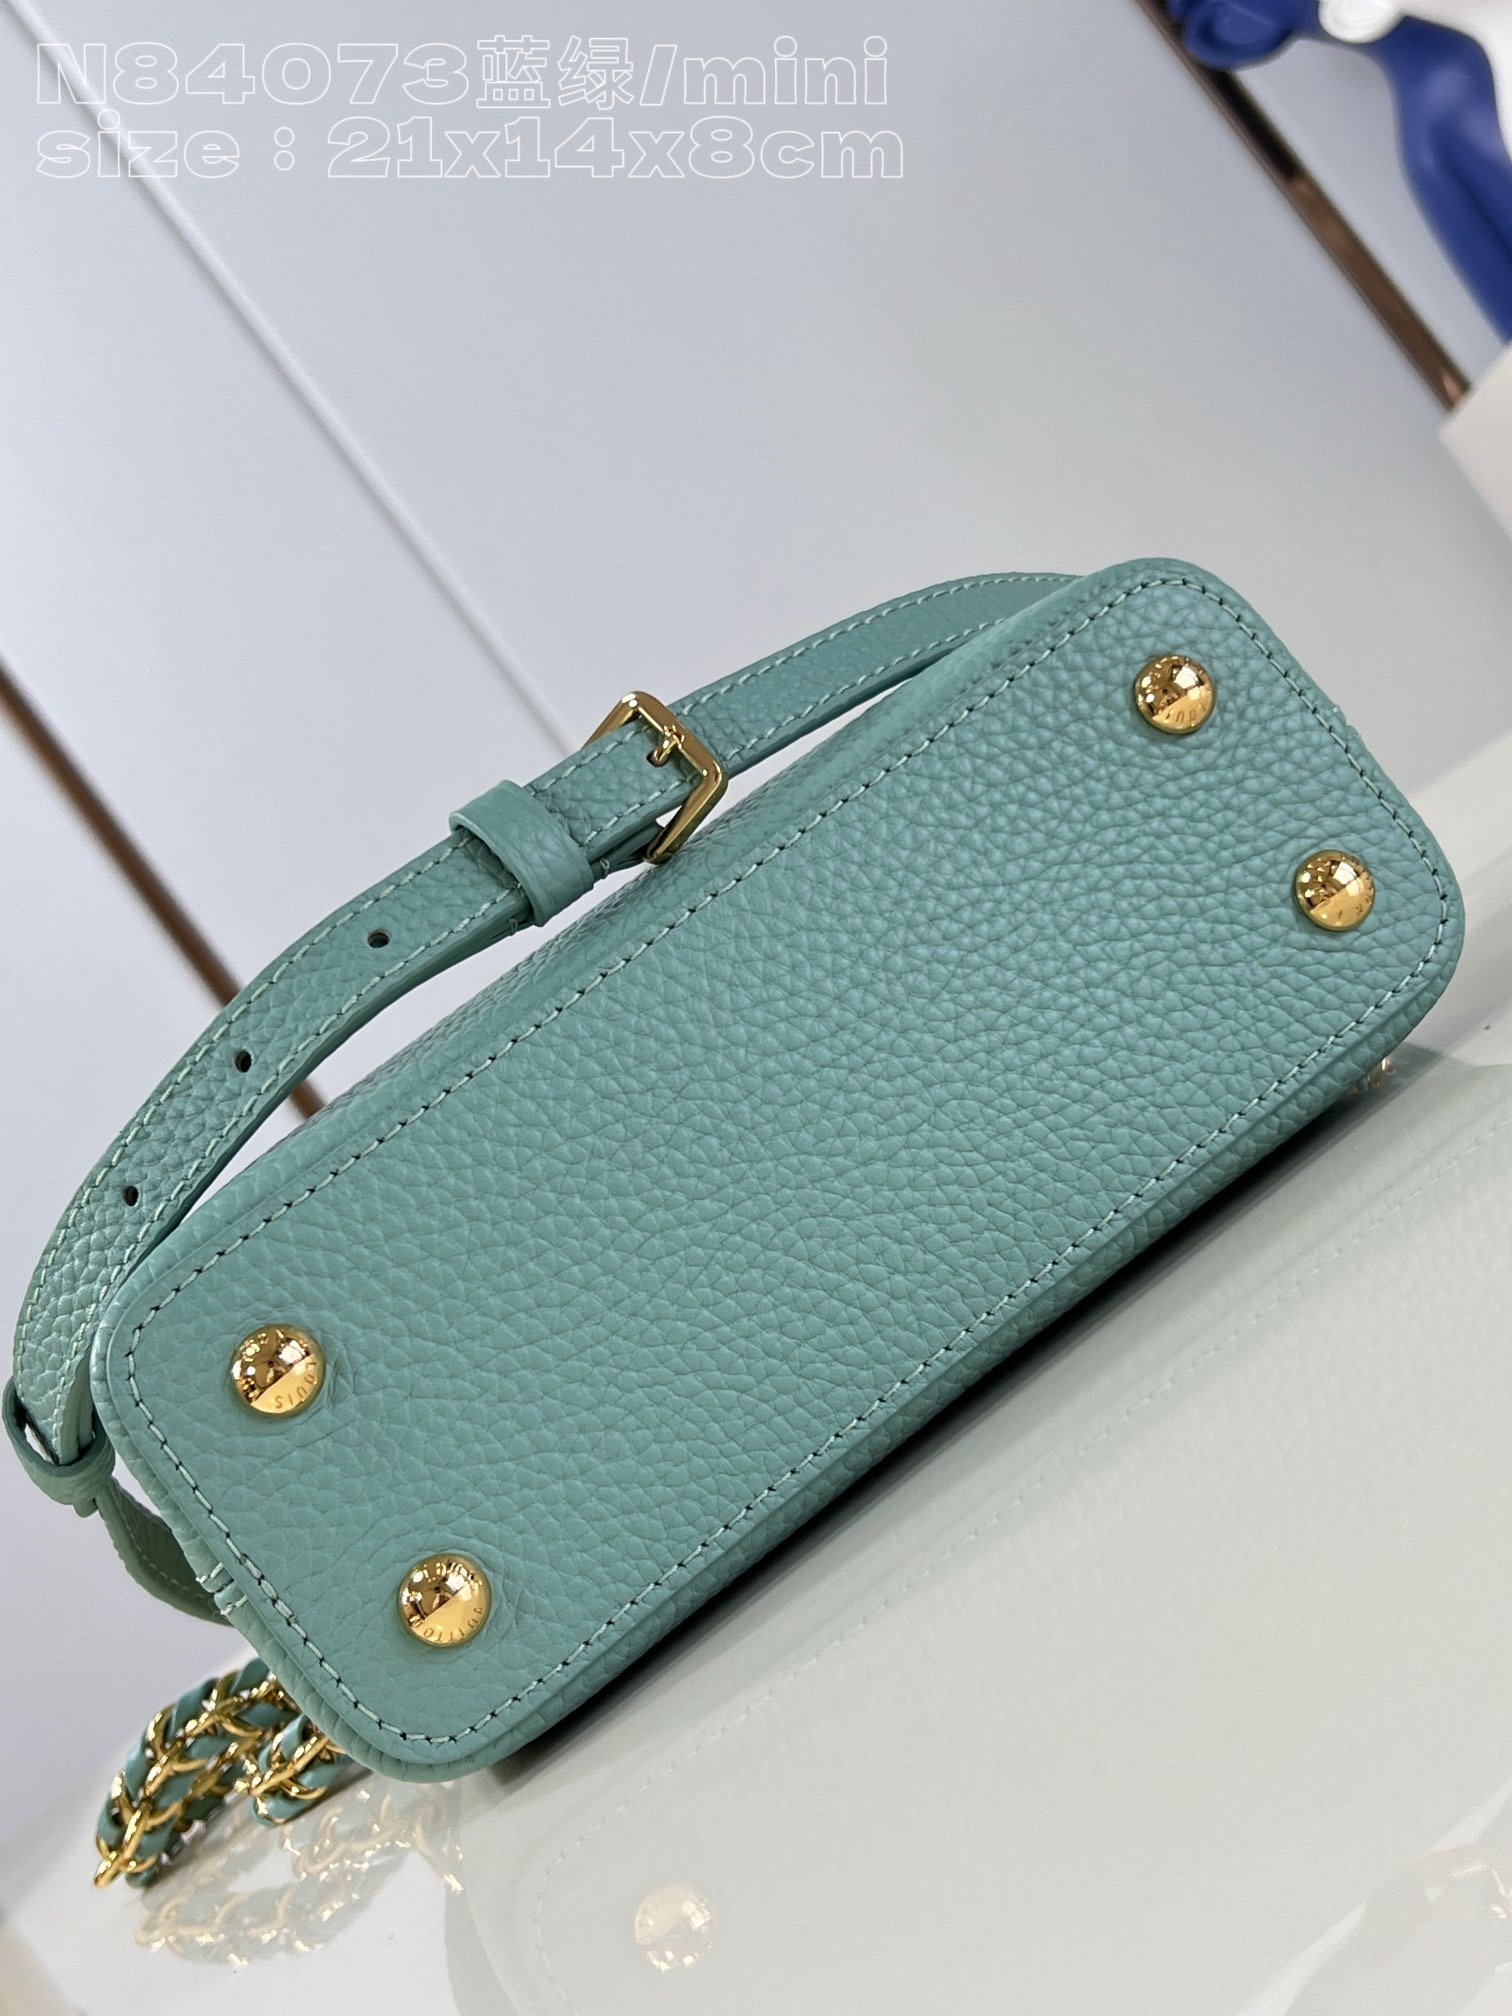 顶级原单N84073蓝绿/迷你本款Capucinesmini手袋采用Taurillon皮革塑造玲珑构型以